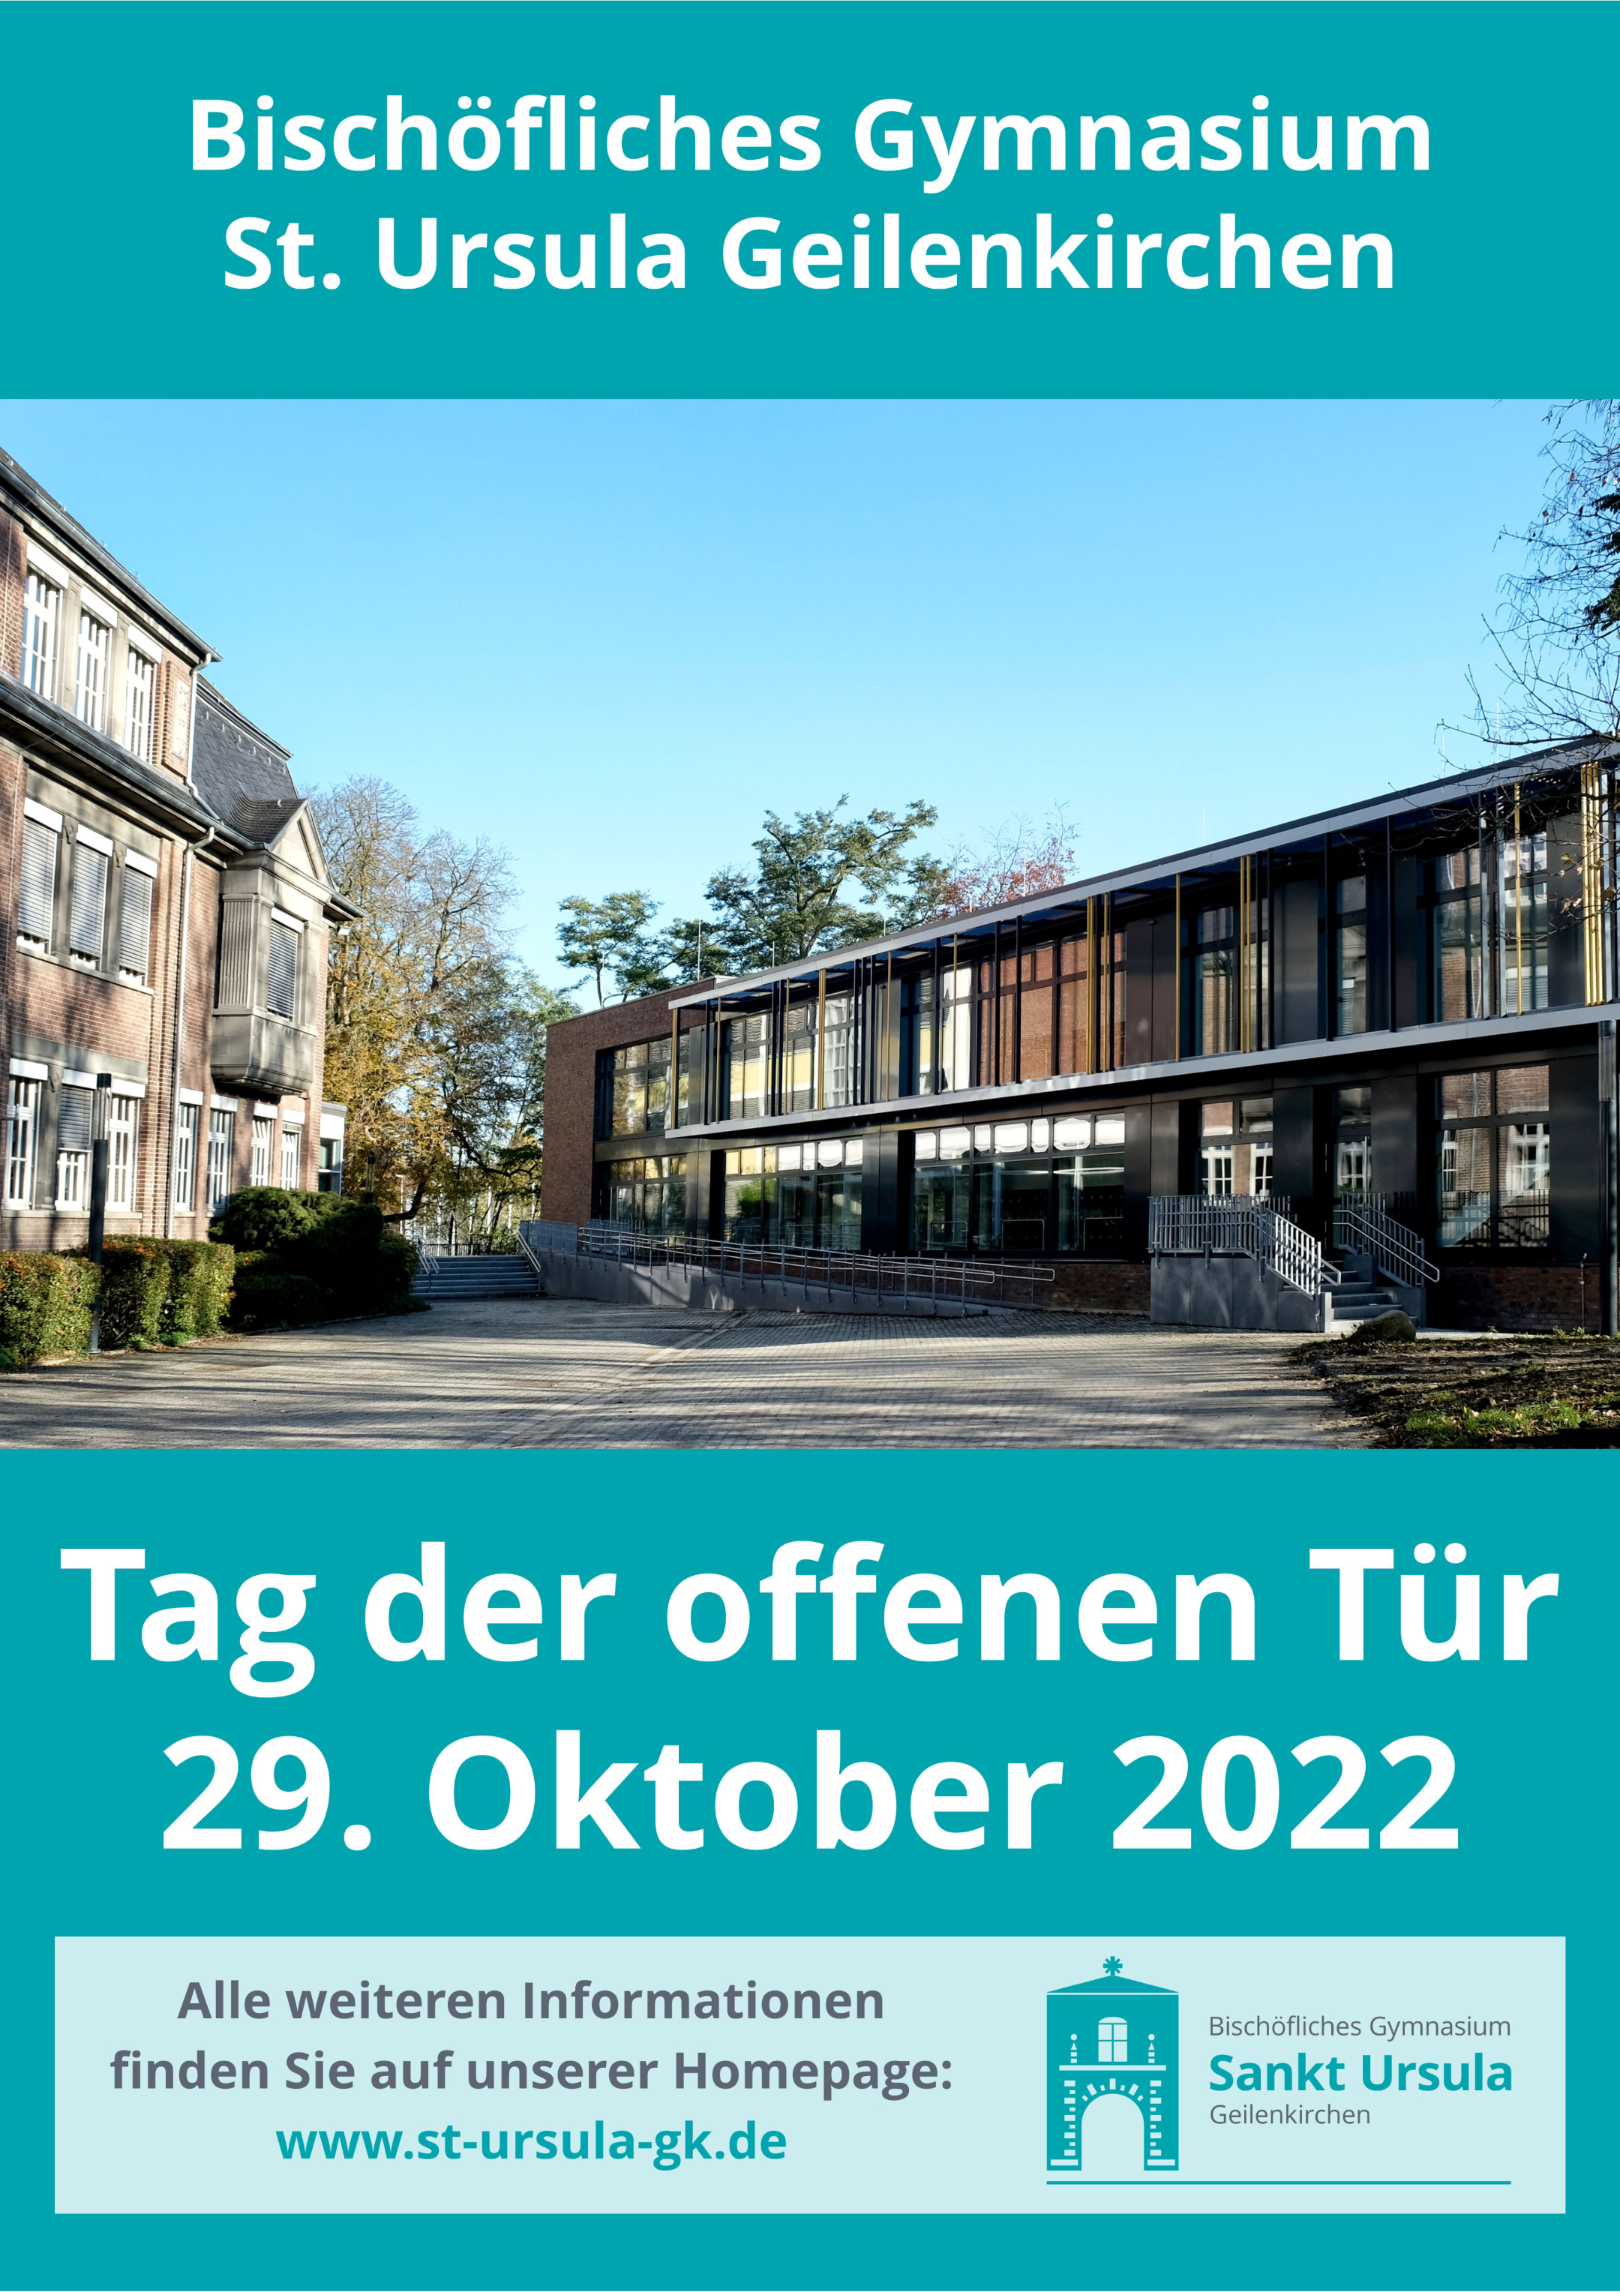 Tag der offenen Tür 2022 (c) Bischöfliches Gymnasium St. Ursula Geilenkirchen